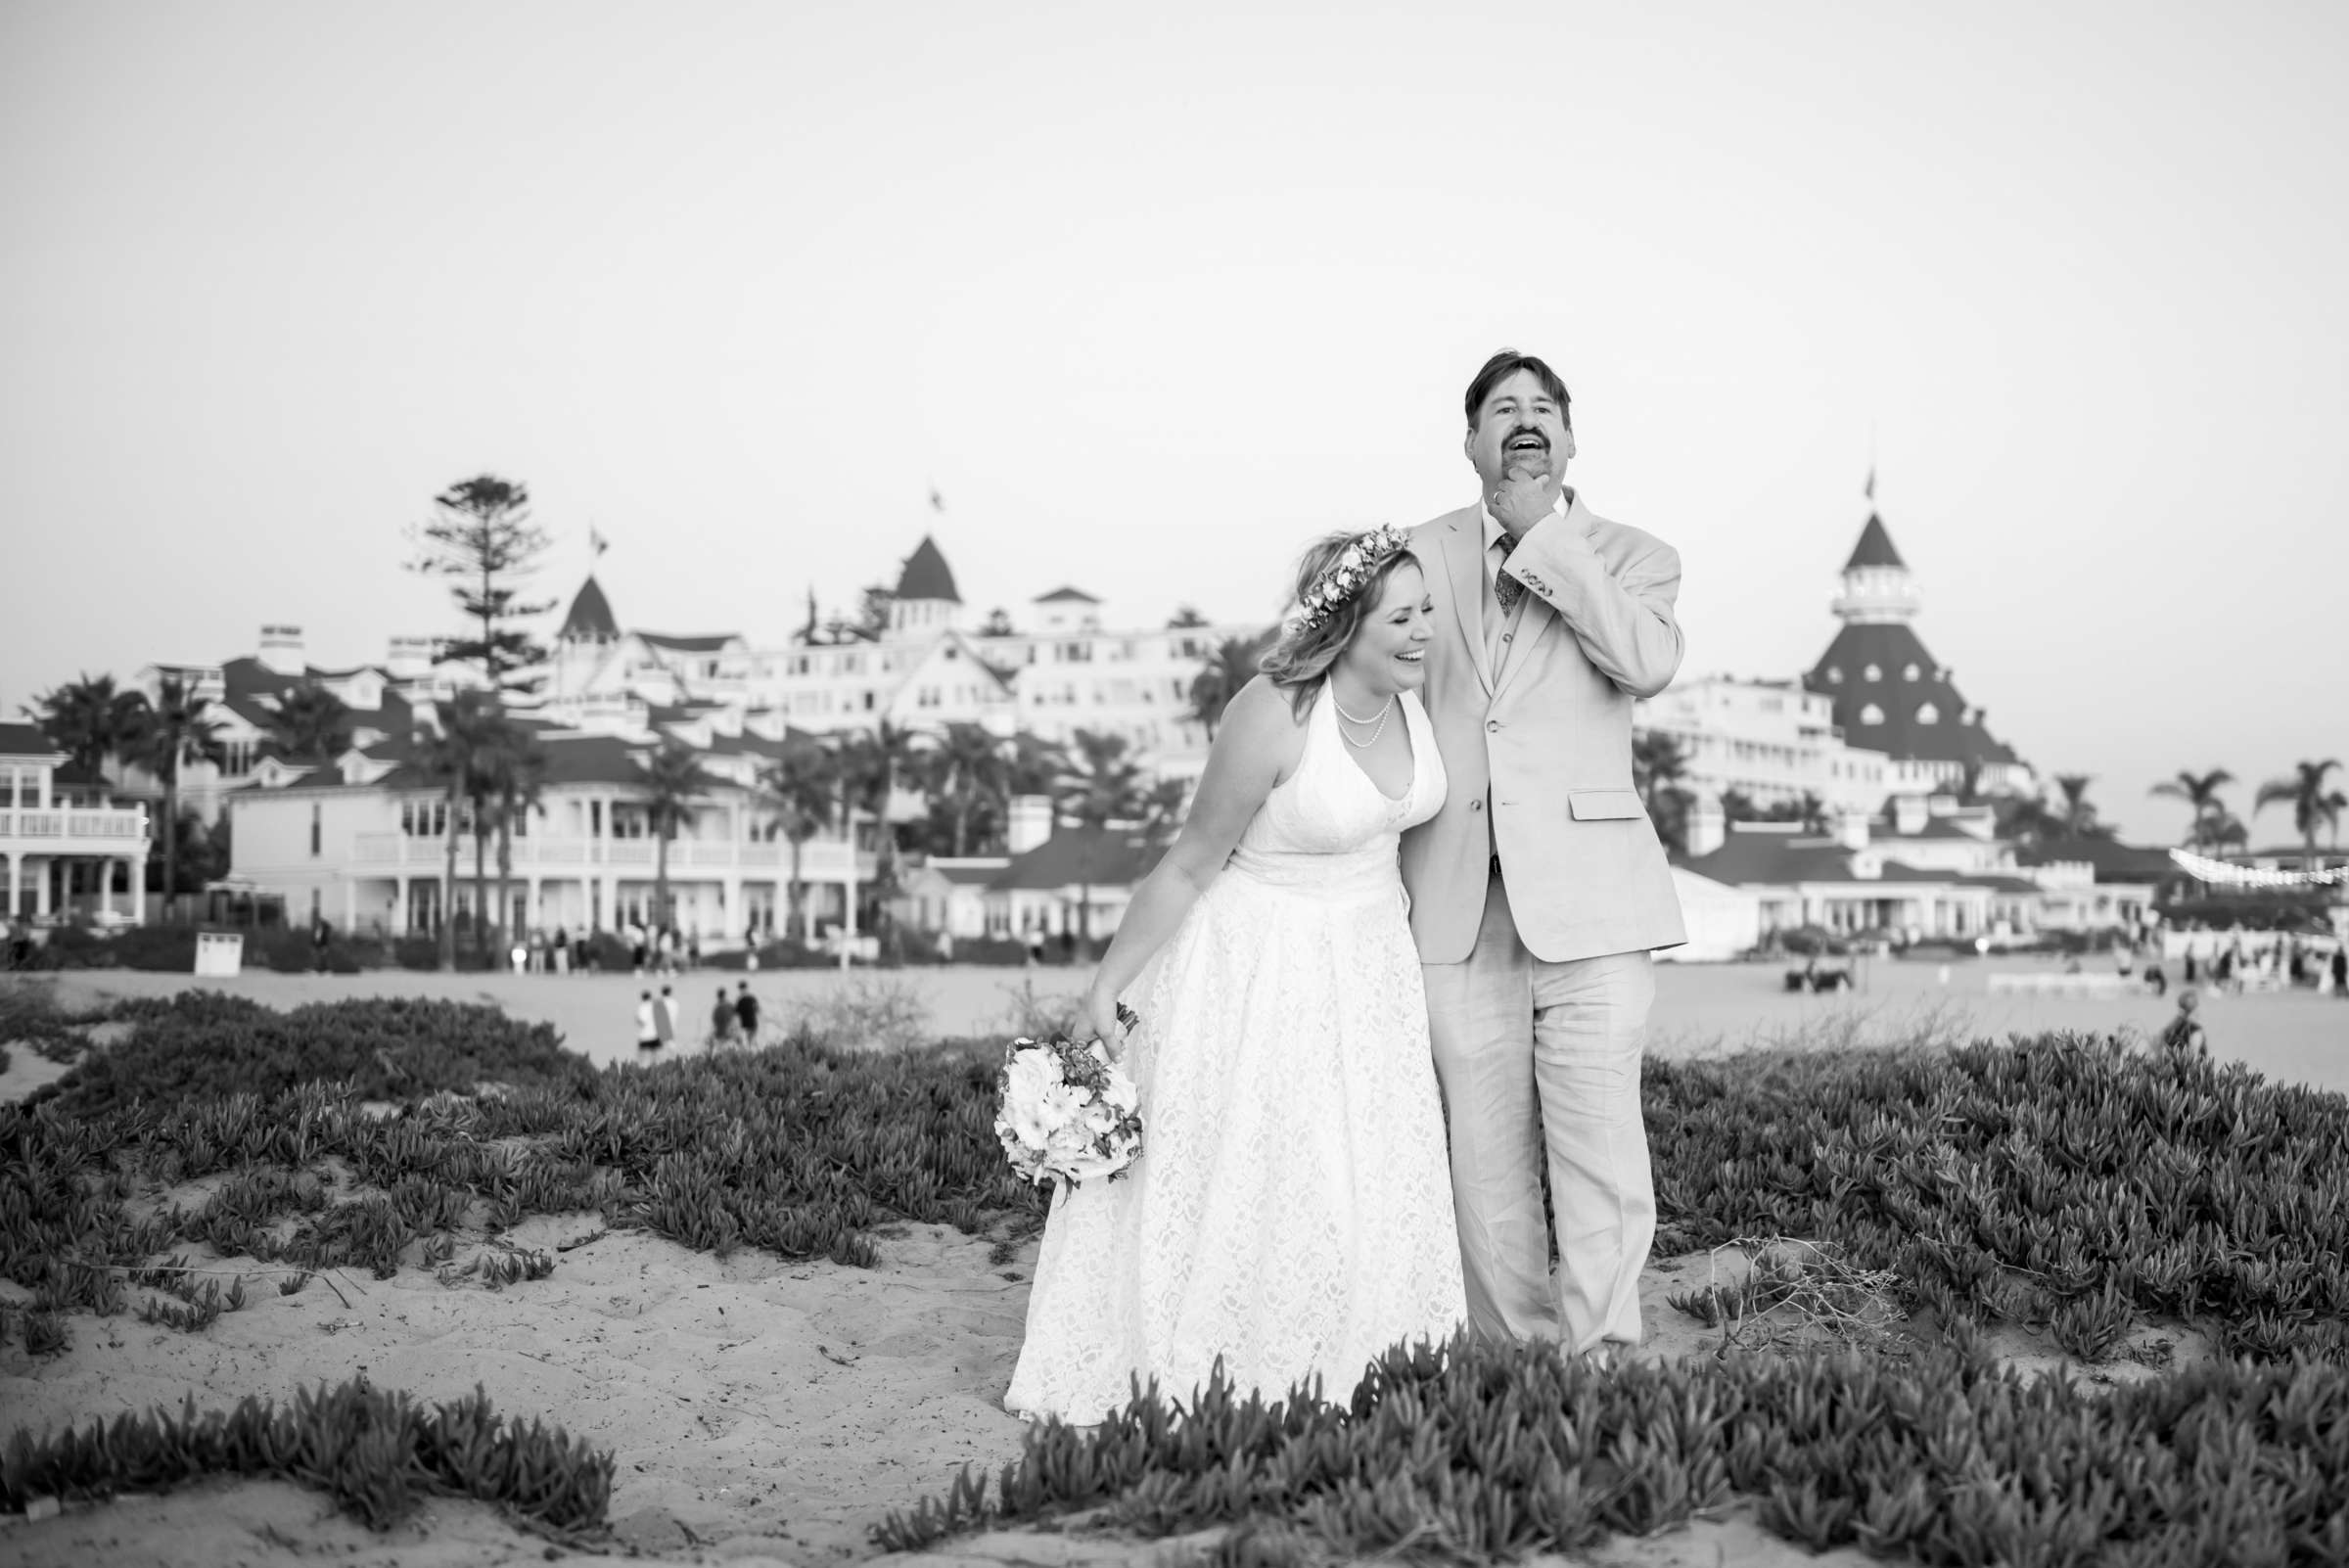 Hotel Del Coronado Wedding, Danielle and Glenn Wedding Photo #52 by True Photography